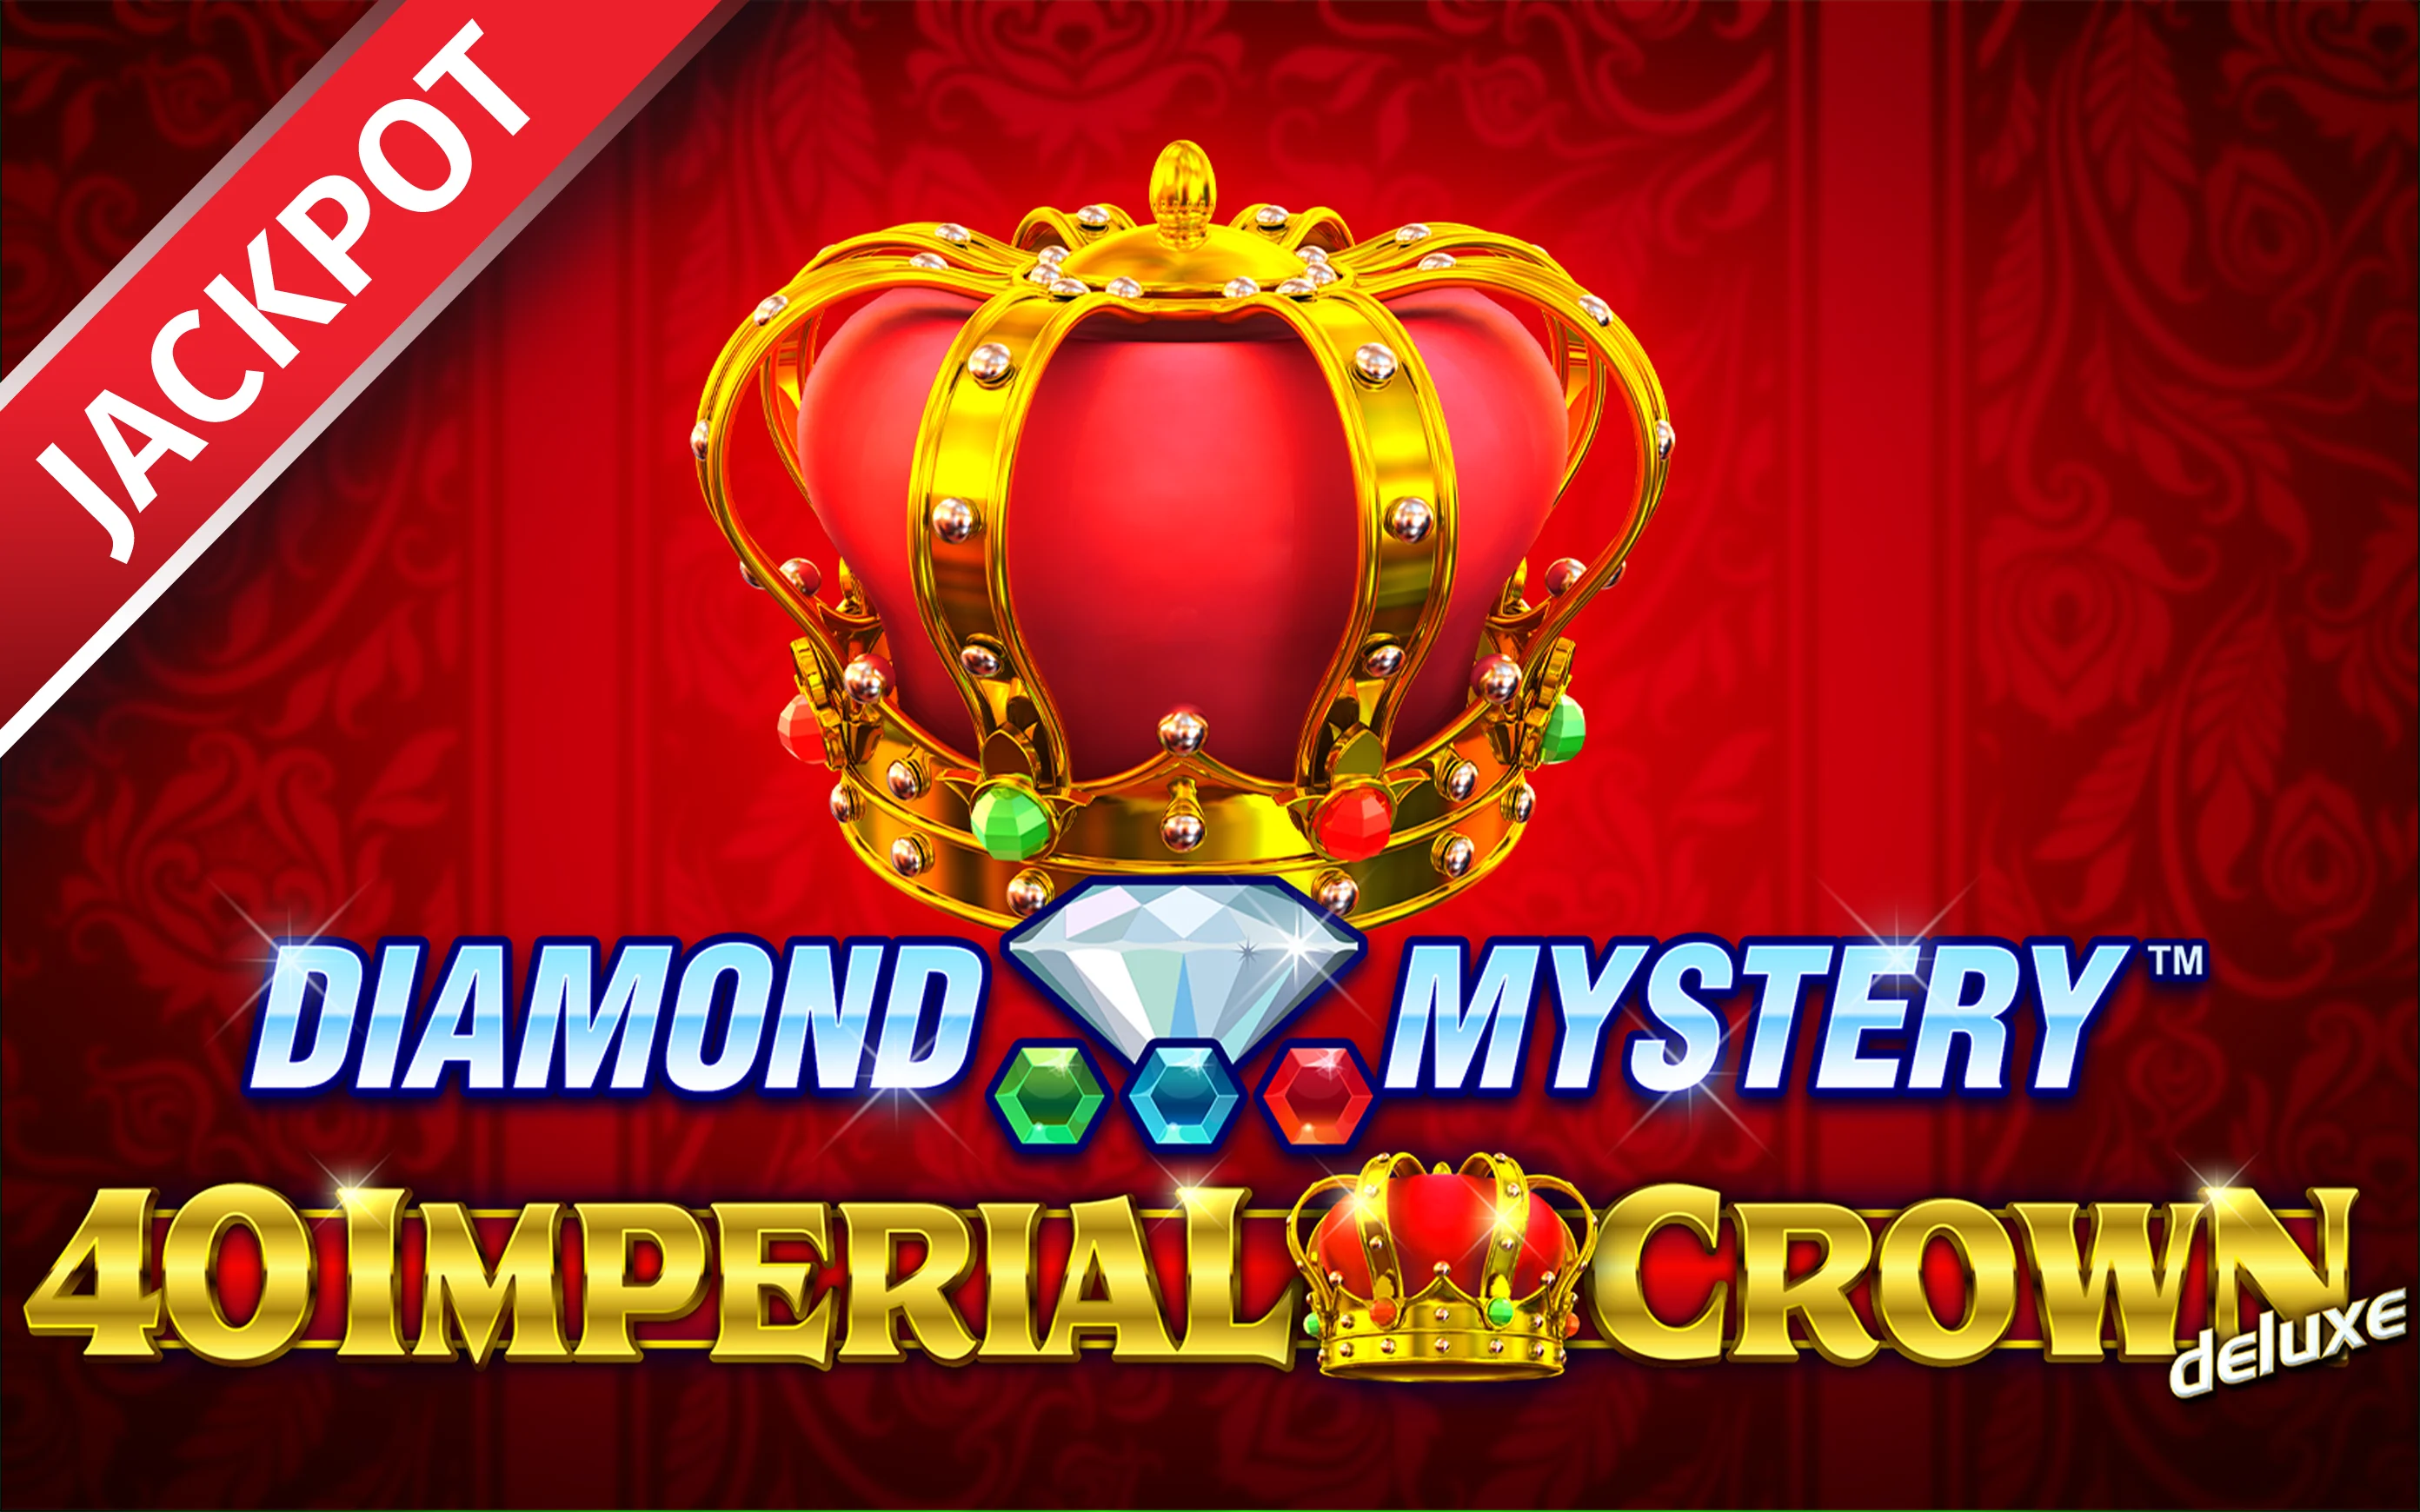 Starcasino.be online casino üzerinden Diamond Mystery™ – 40 Imperial Crown deluxe oynayın